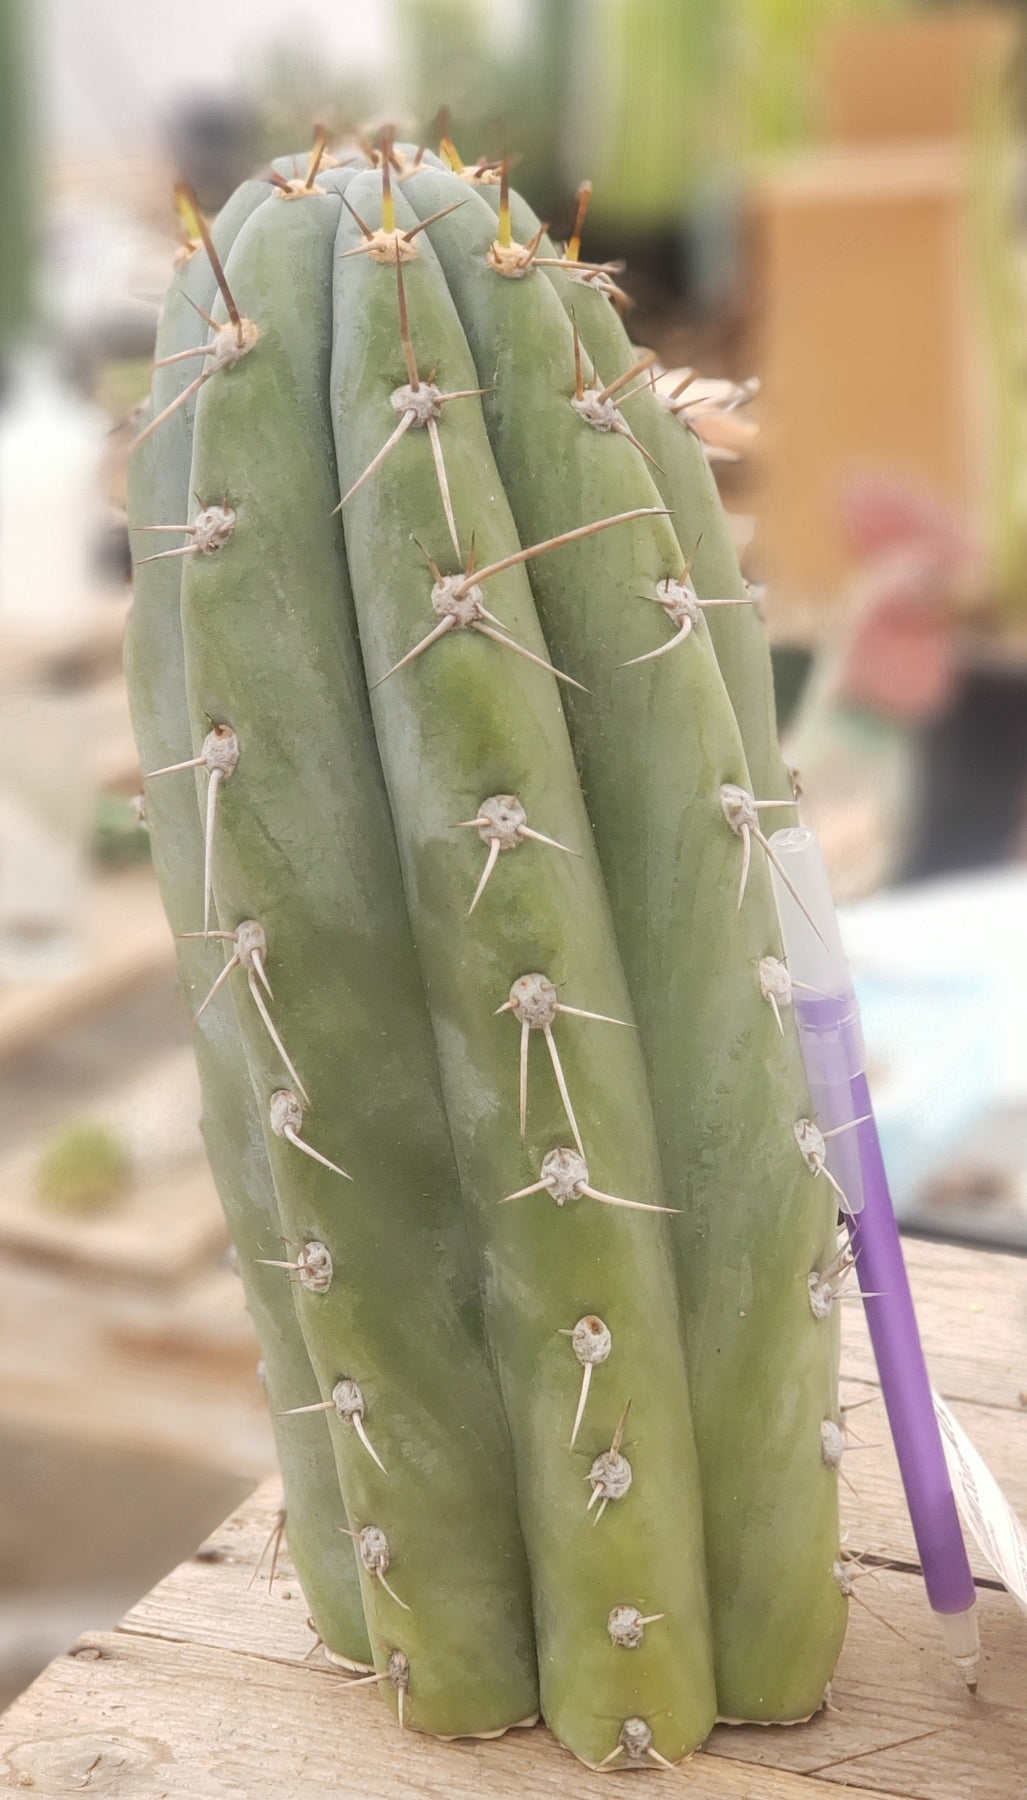 #EC52 EXACT Trichocereus Peruvianus "Perseverance #3" Cactus Cutting 10.5"-Cactus - Large - Exact-The Succulent Source